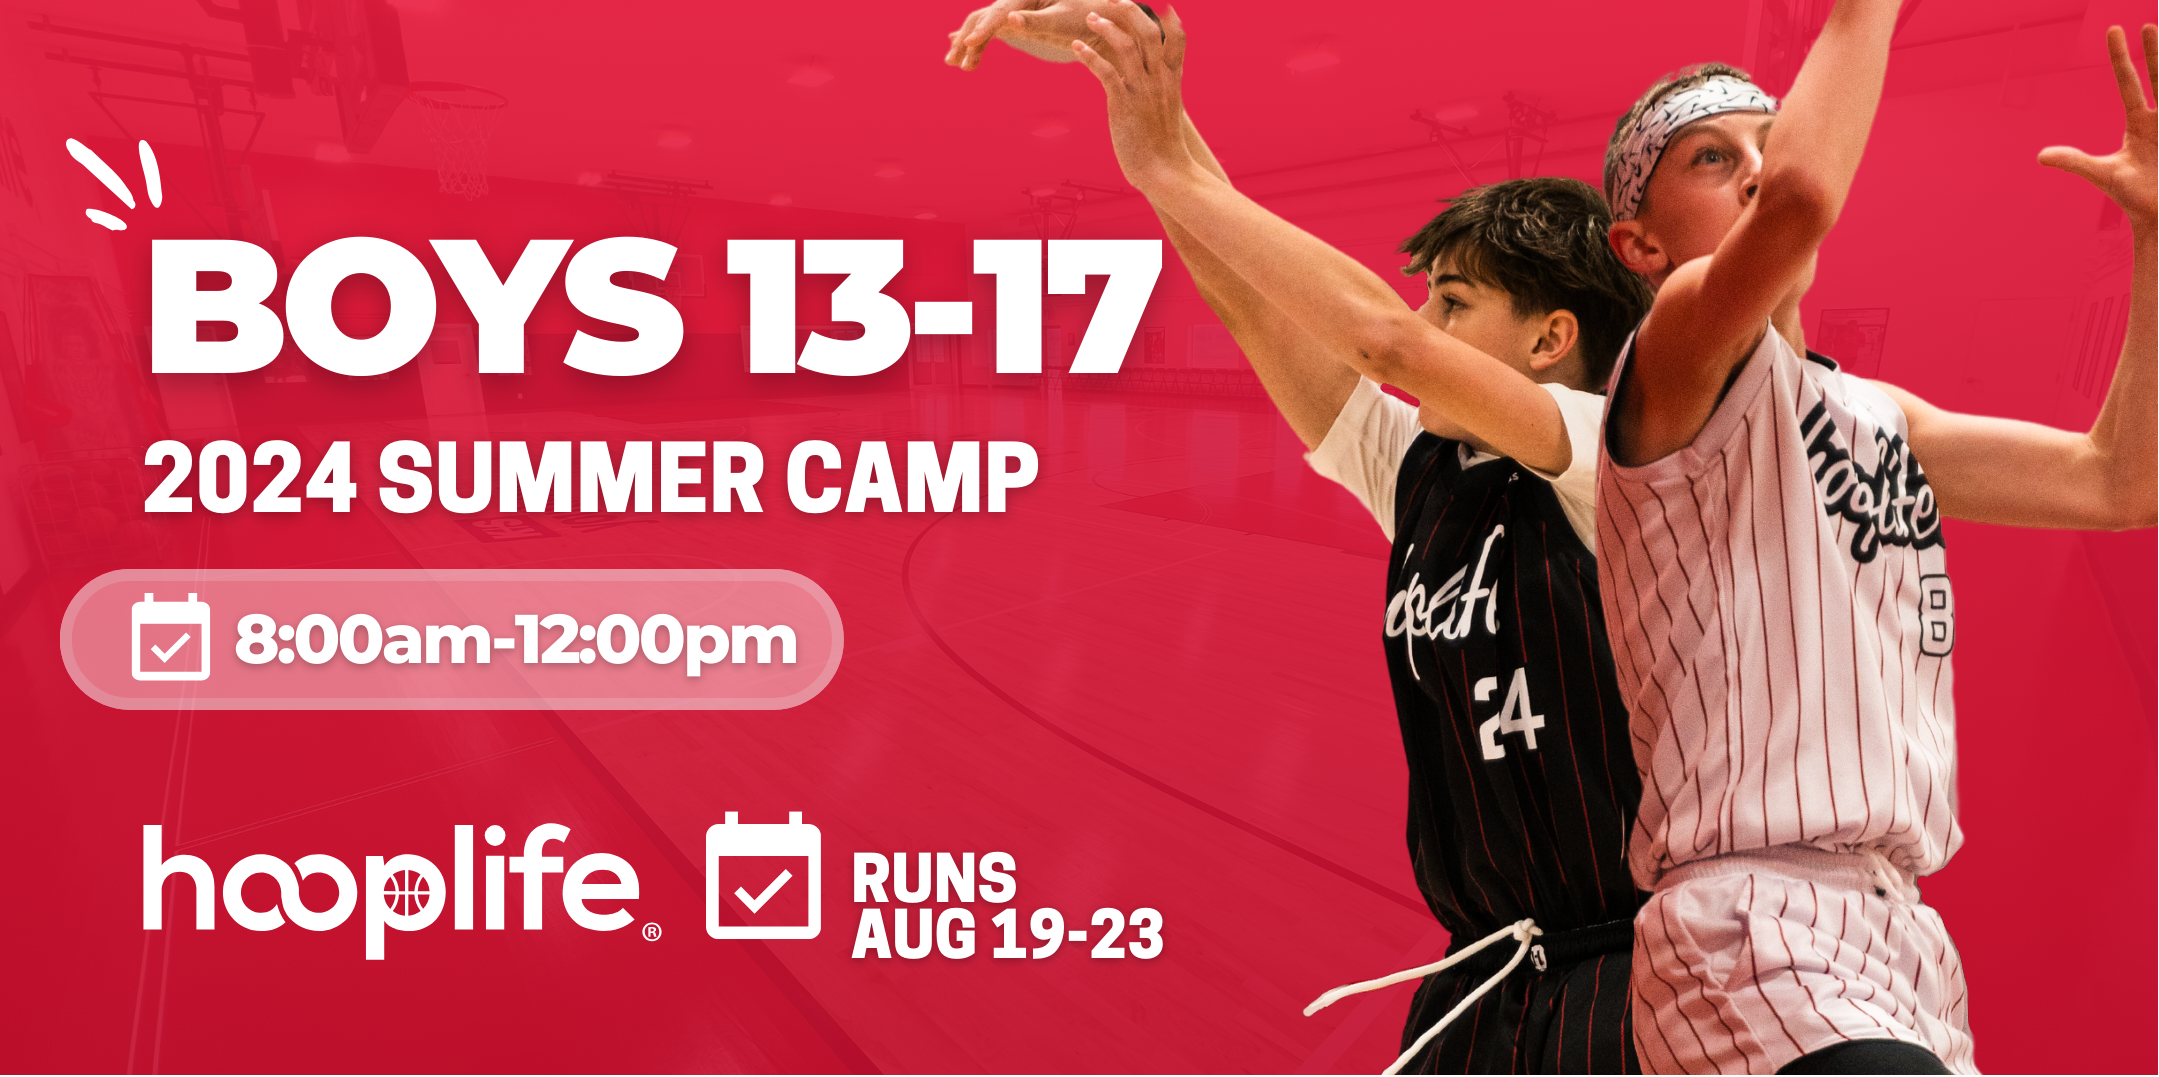 Boys 13-17 Summer Camp | Aug 19-23